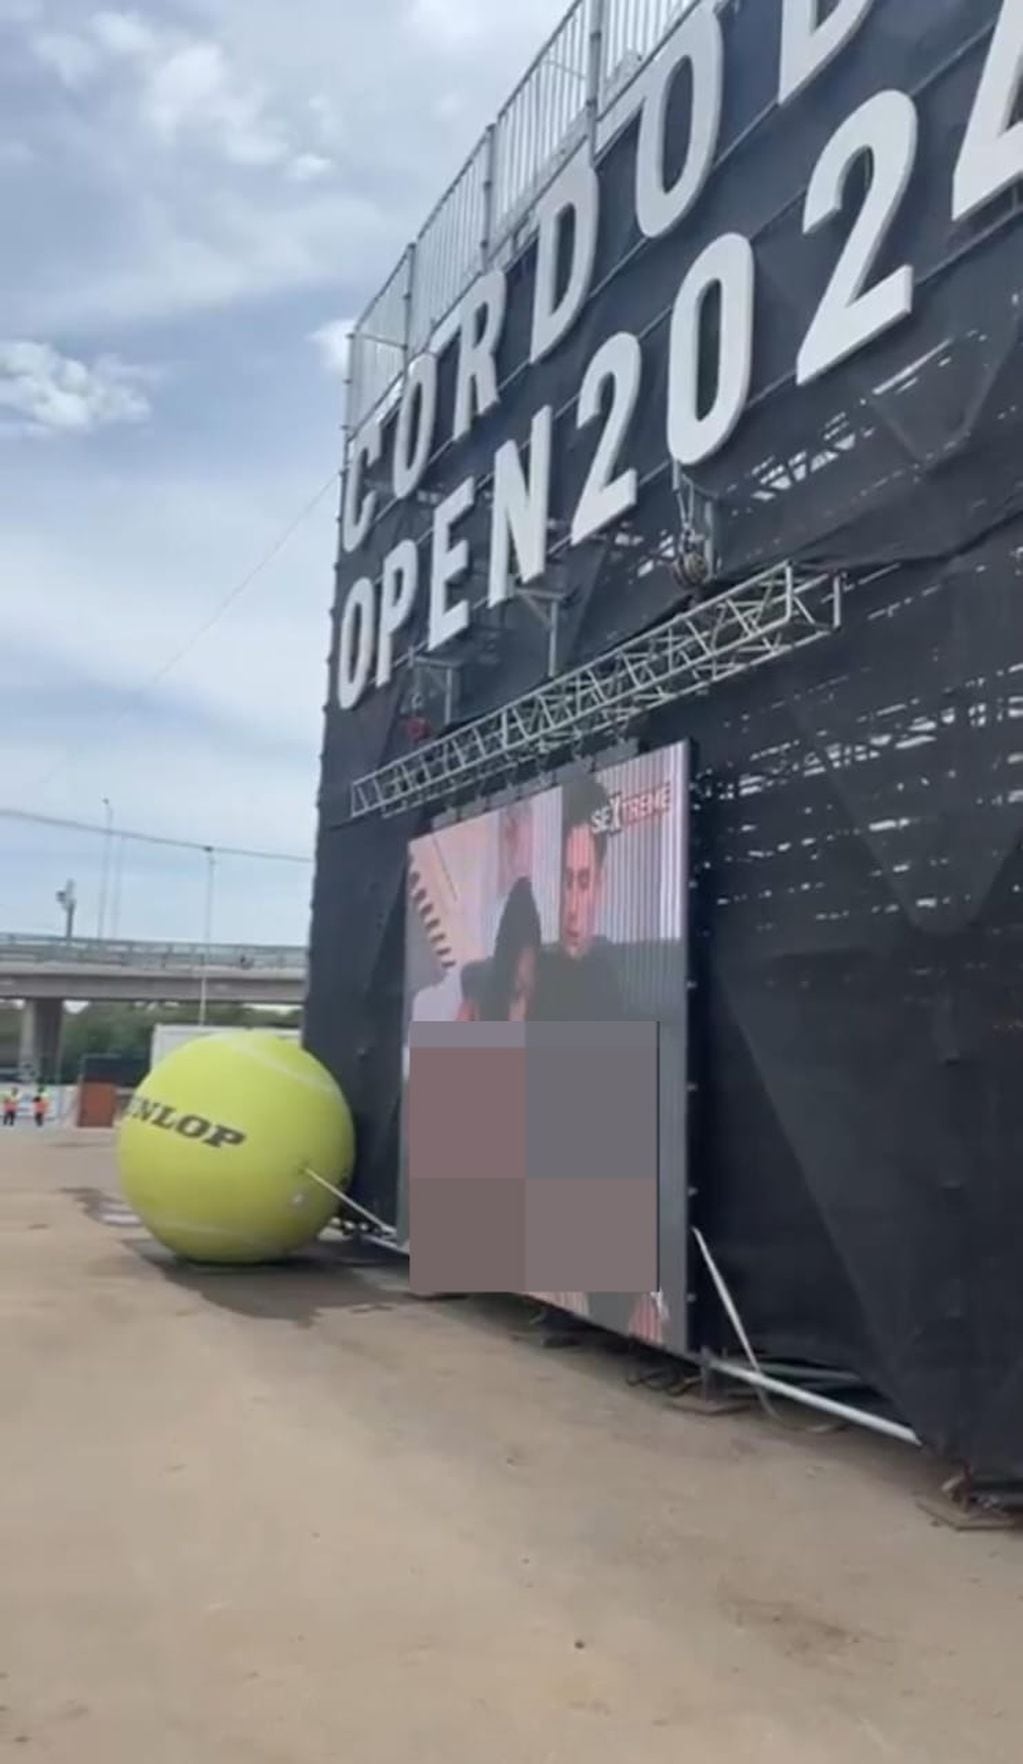 Hackearon una de las pantallas del Córdoba Open de tenis, y expusieron imágenes pornográficas.